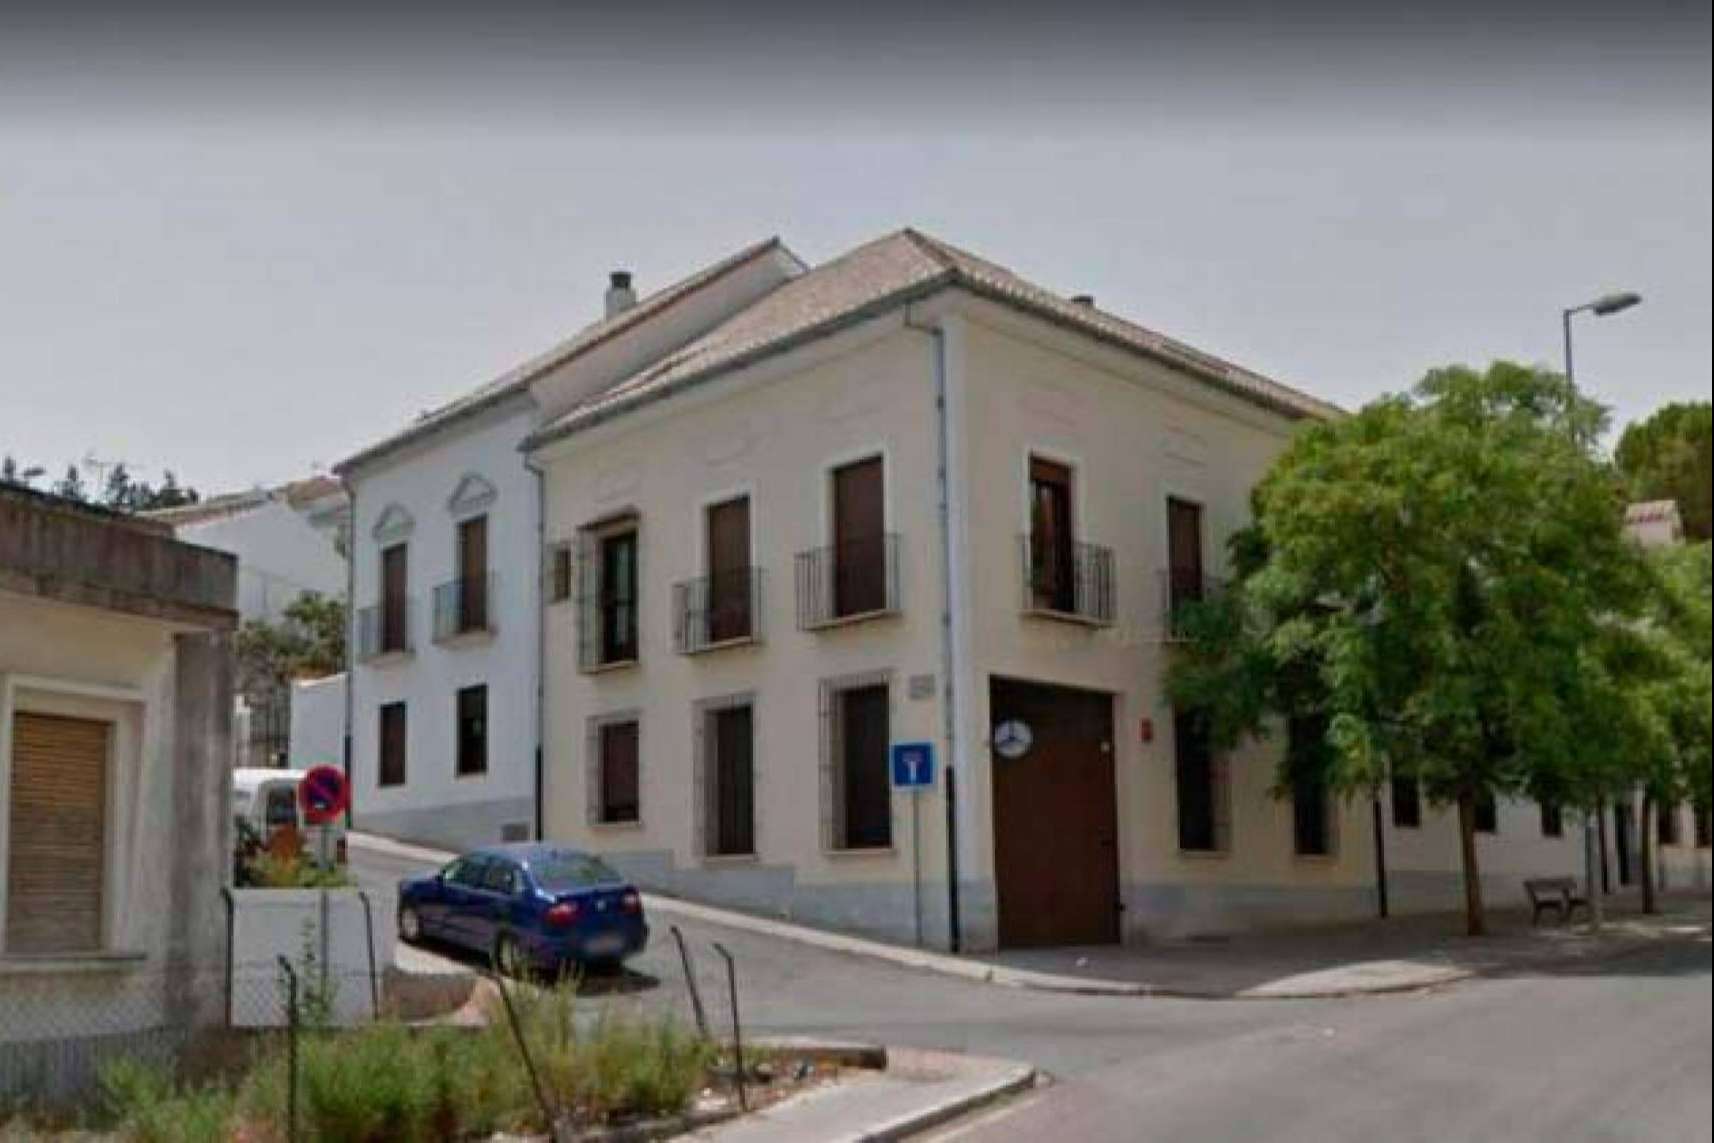 6 subastas de viviendas disponibles en Antequera, pujar por ellas en la plataforma Eactivos.com